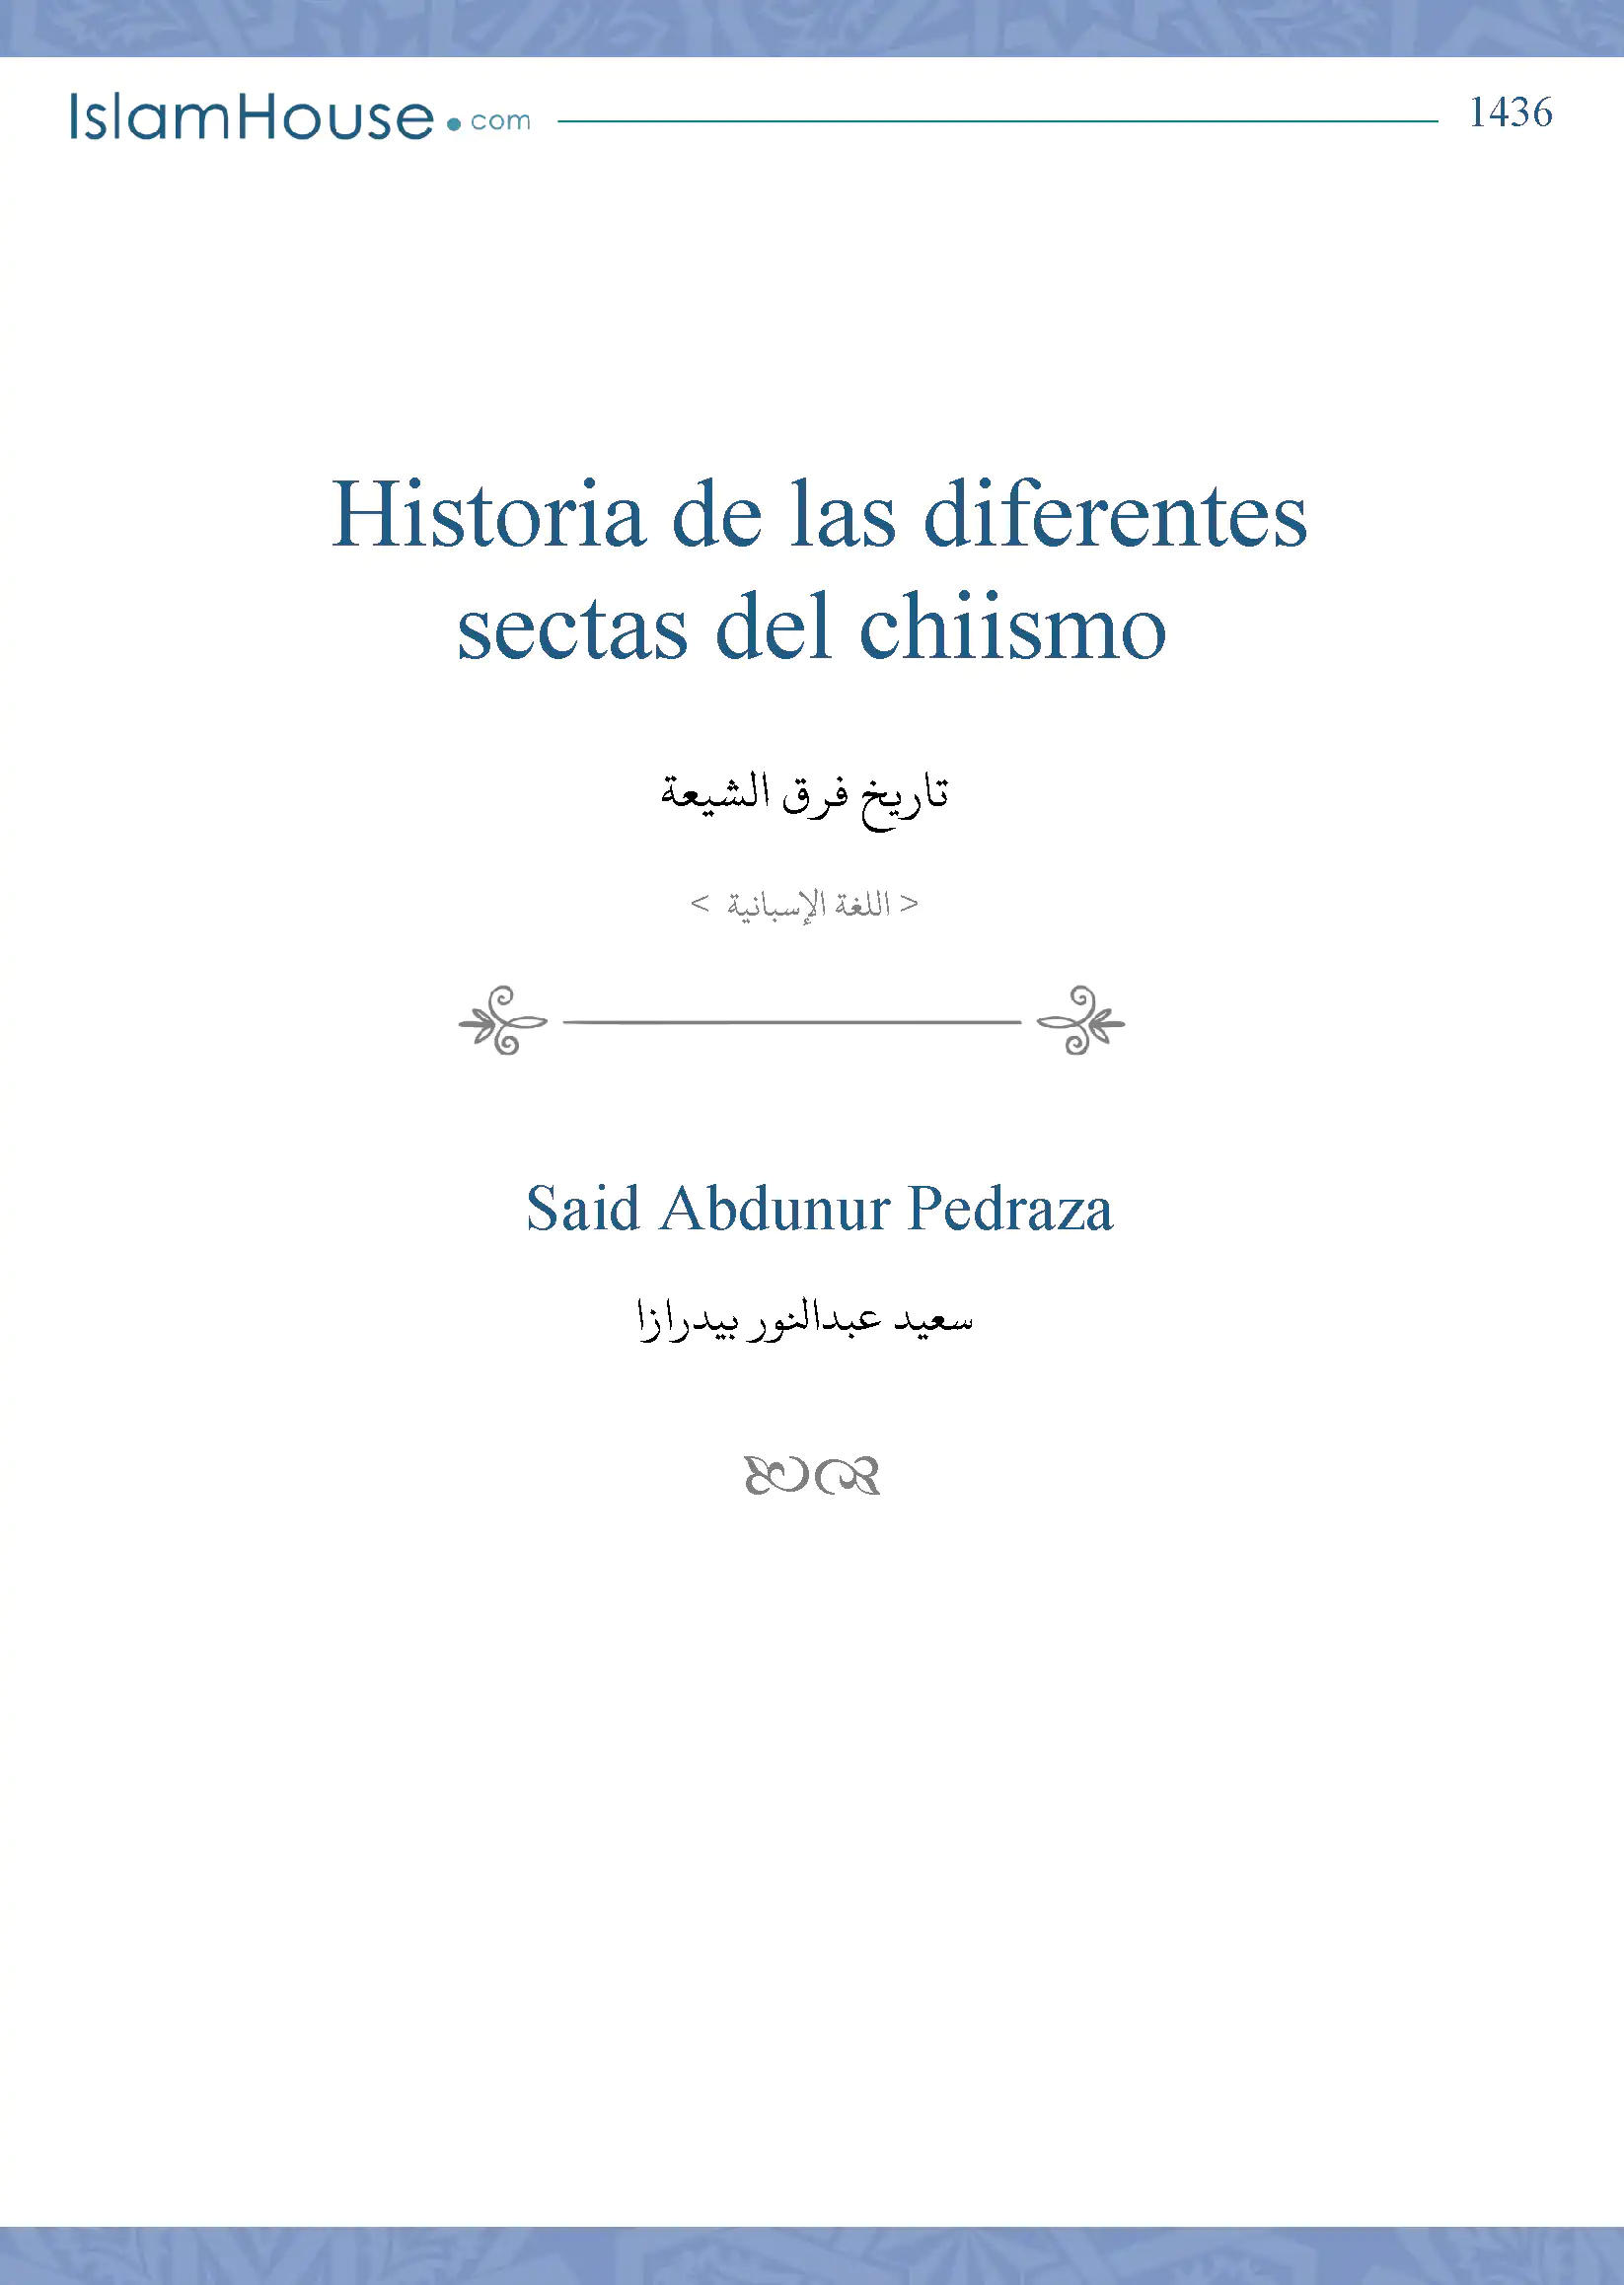 Historia de las diferentes sectas del chiismo